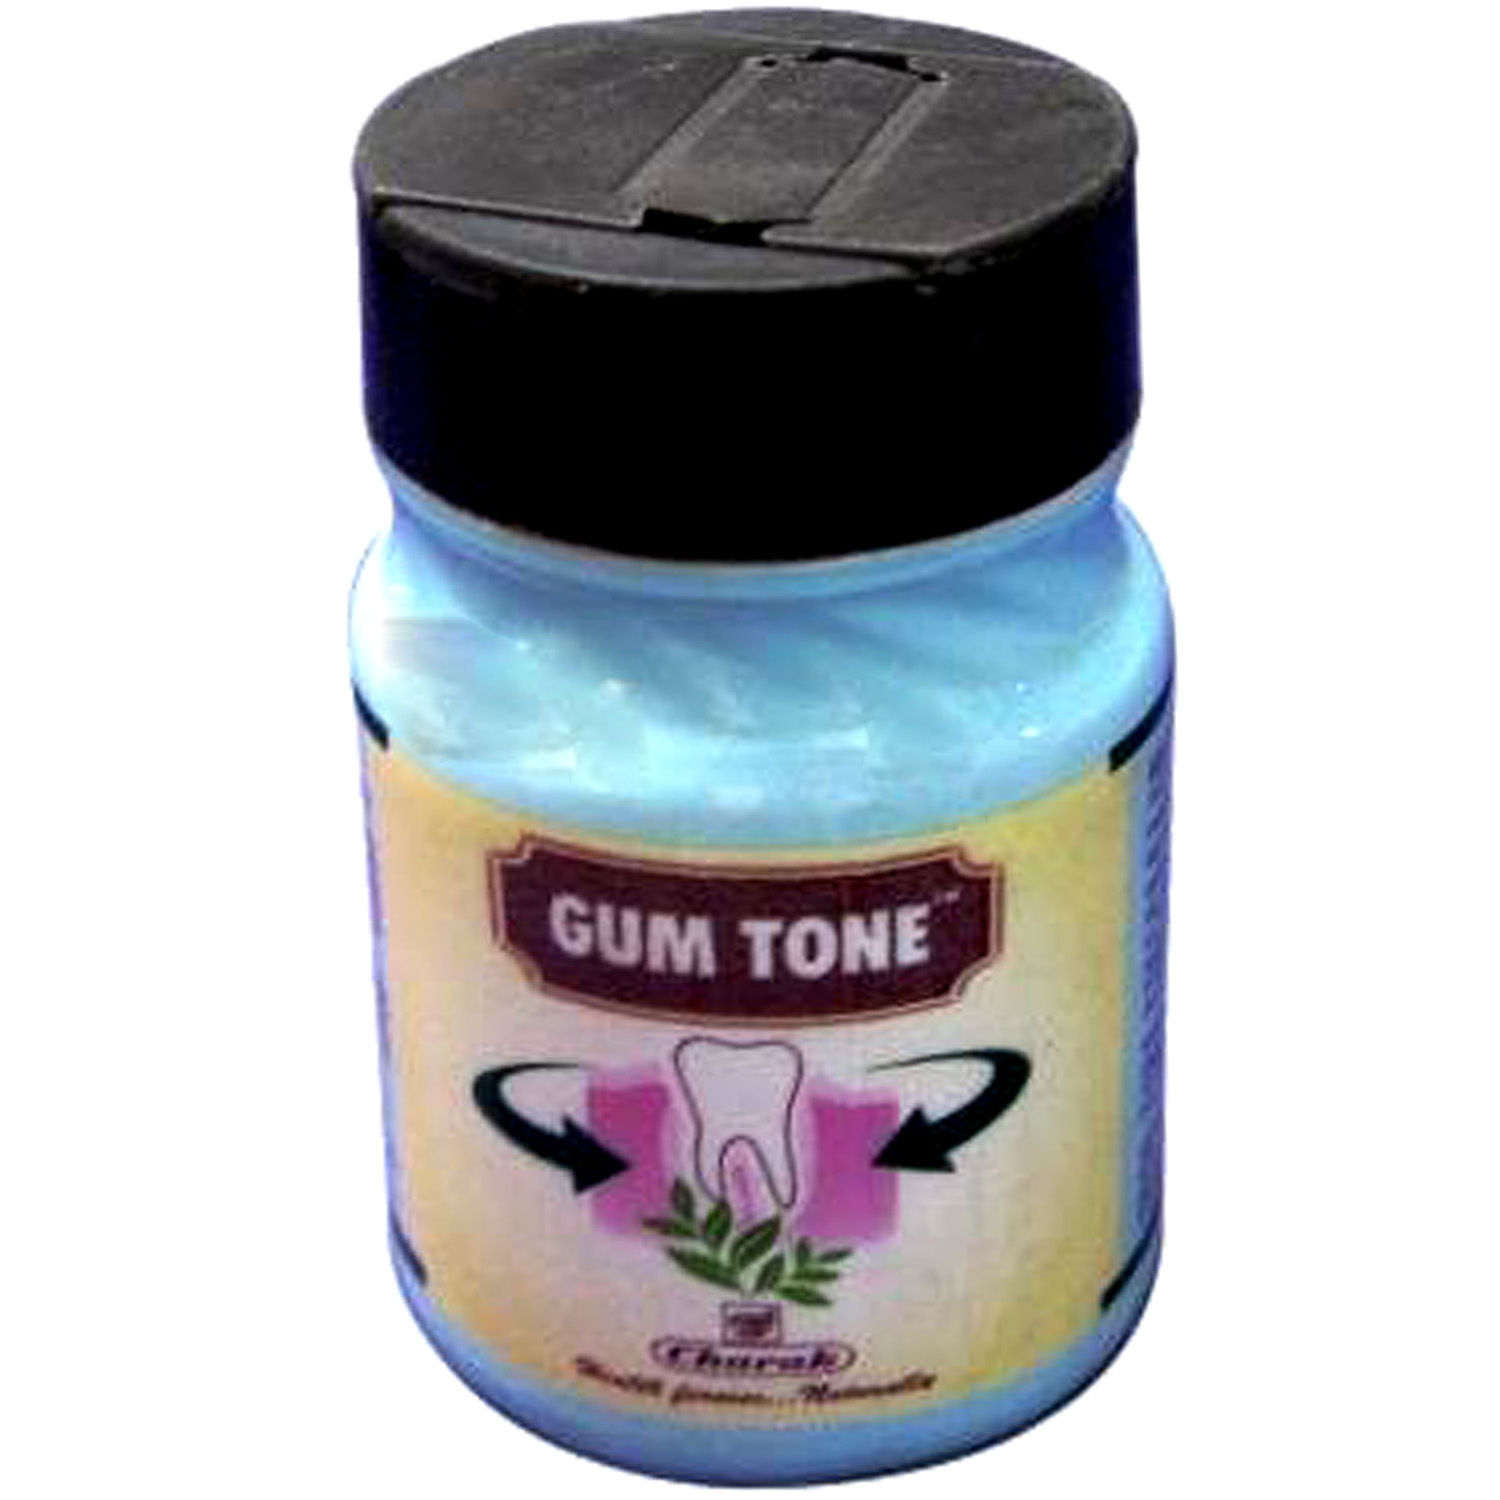 Buy Gum Tone Powder, 40 gm Online